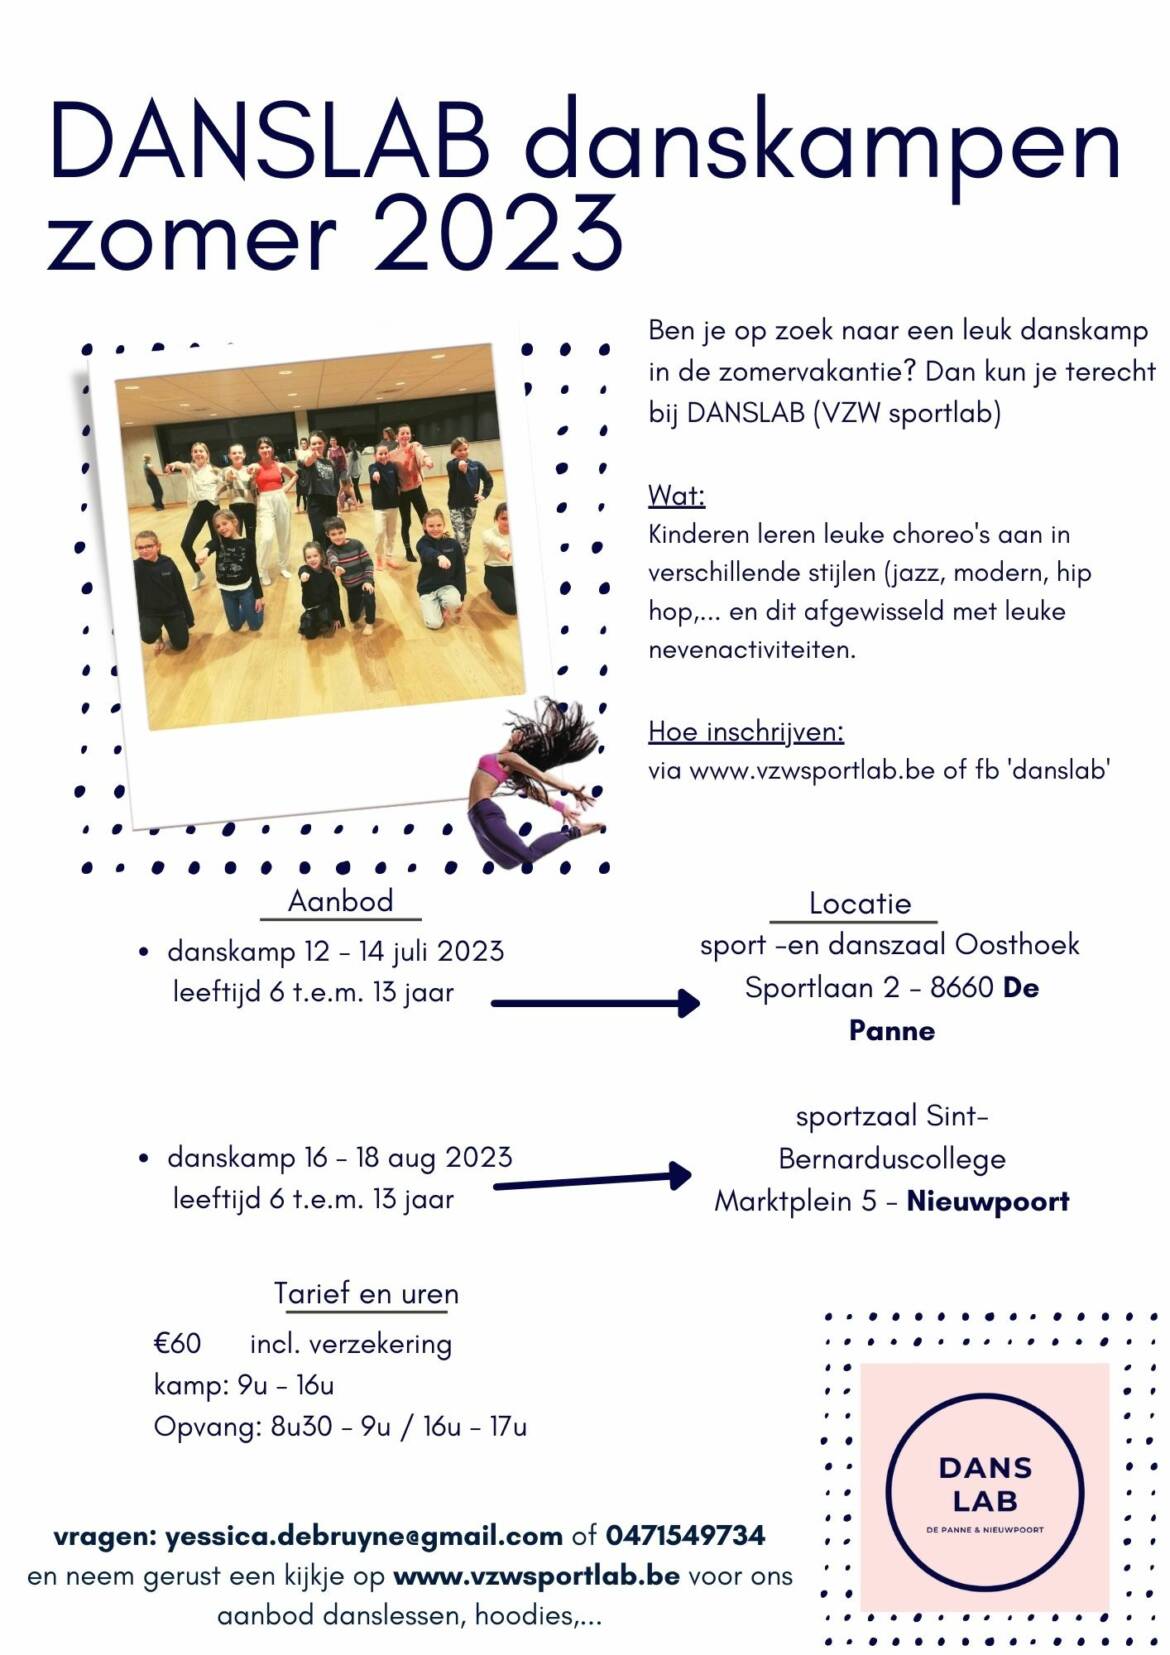 danslab-danskampen-zomer-2023.jpg